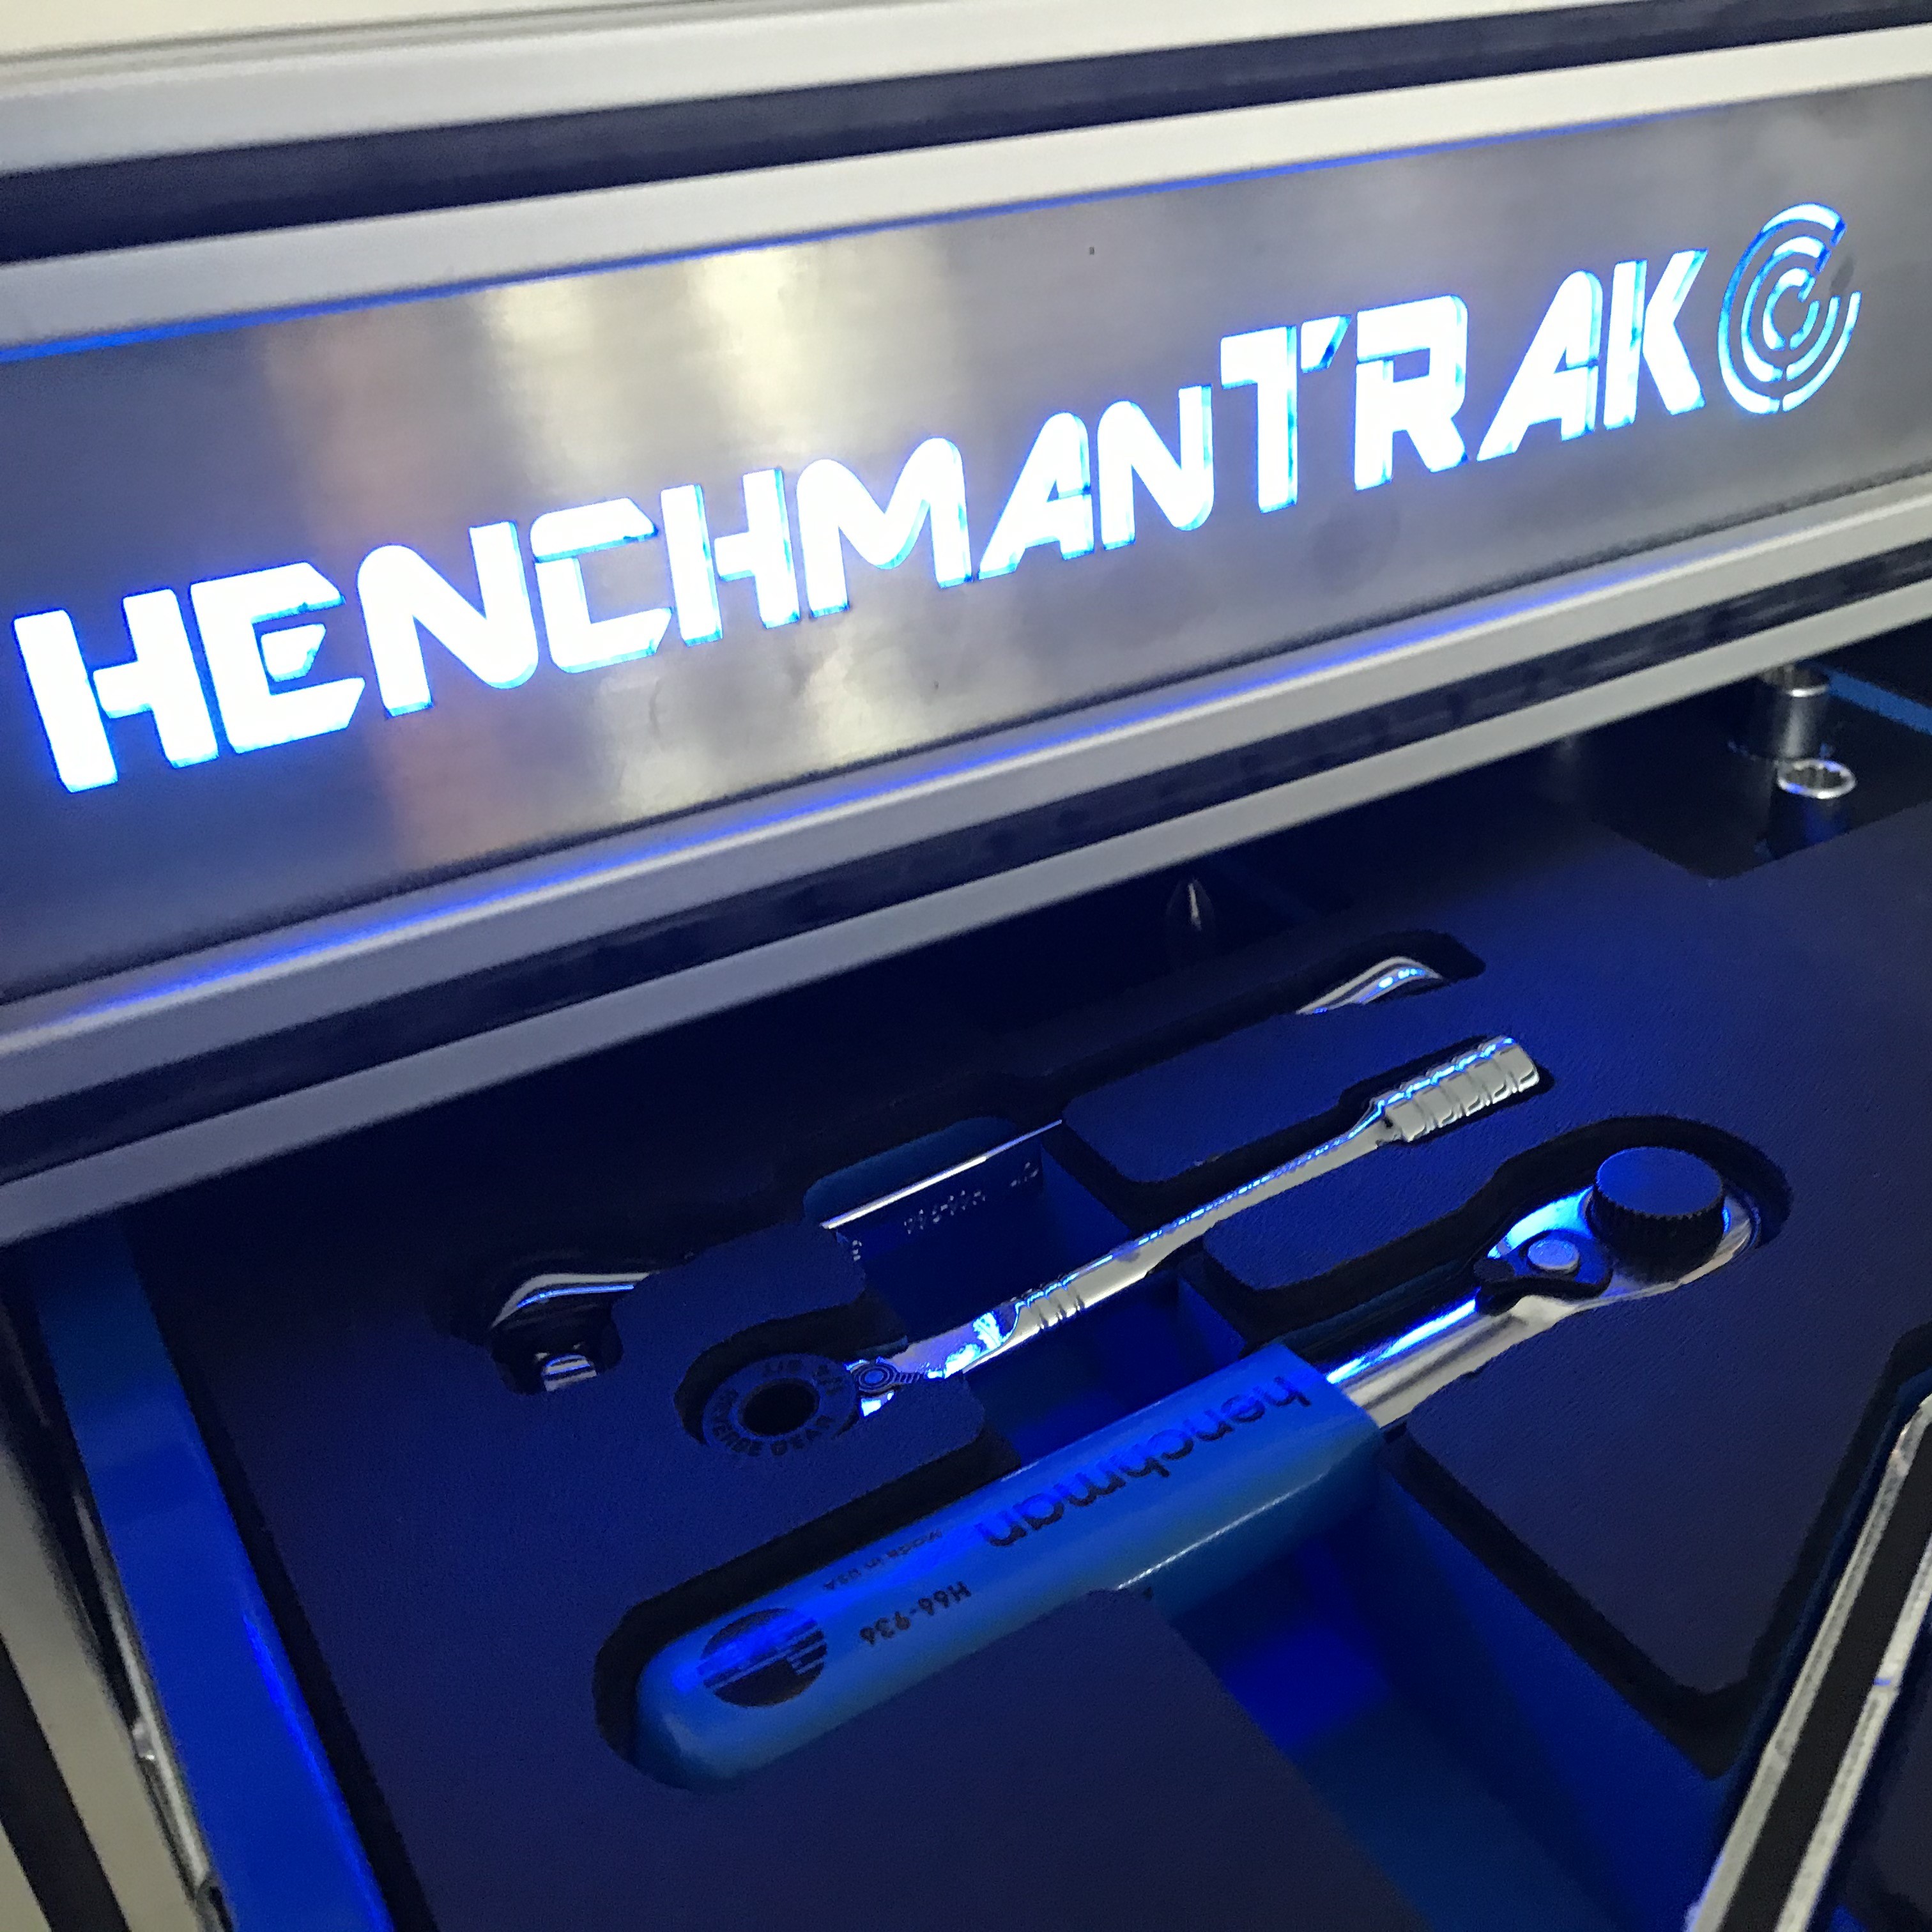 HenchmanTRAK Roller Cabinet kabTRAK